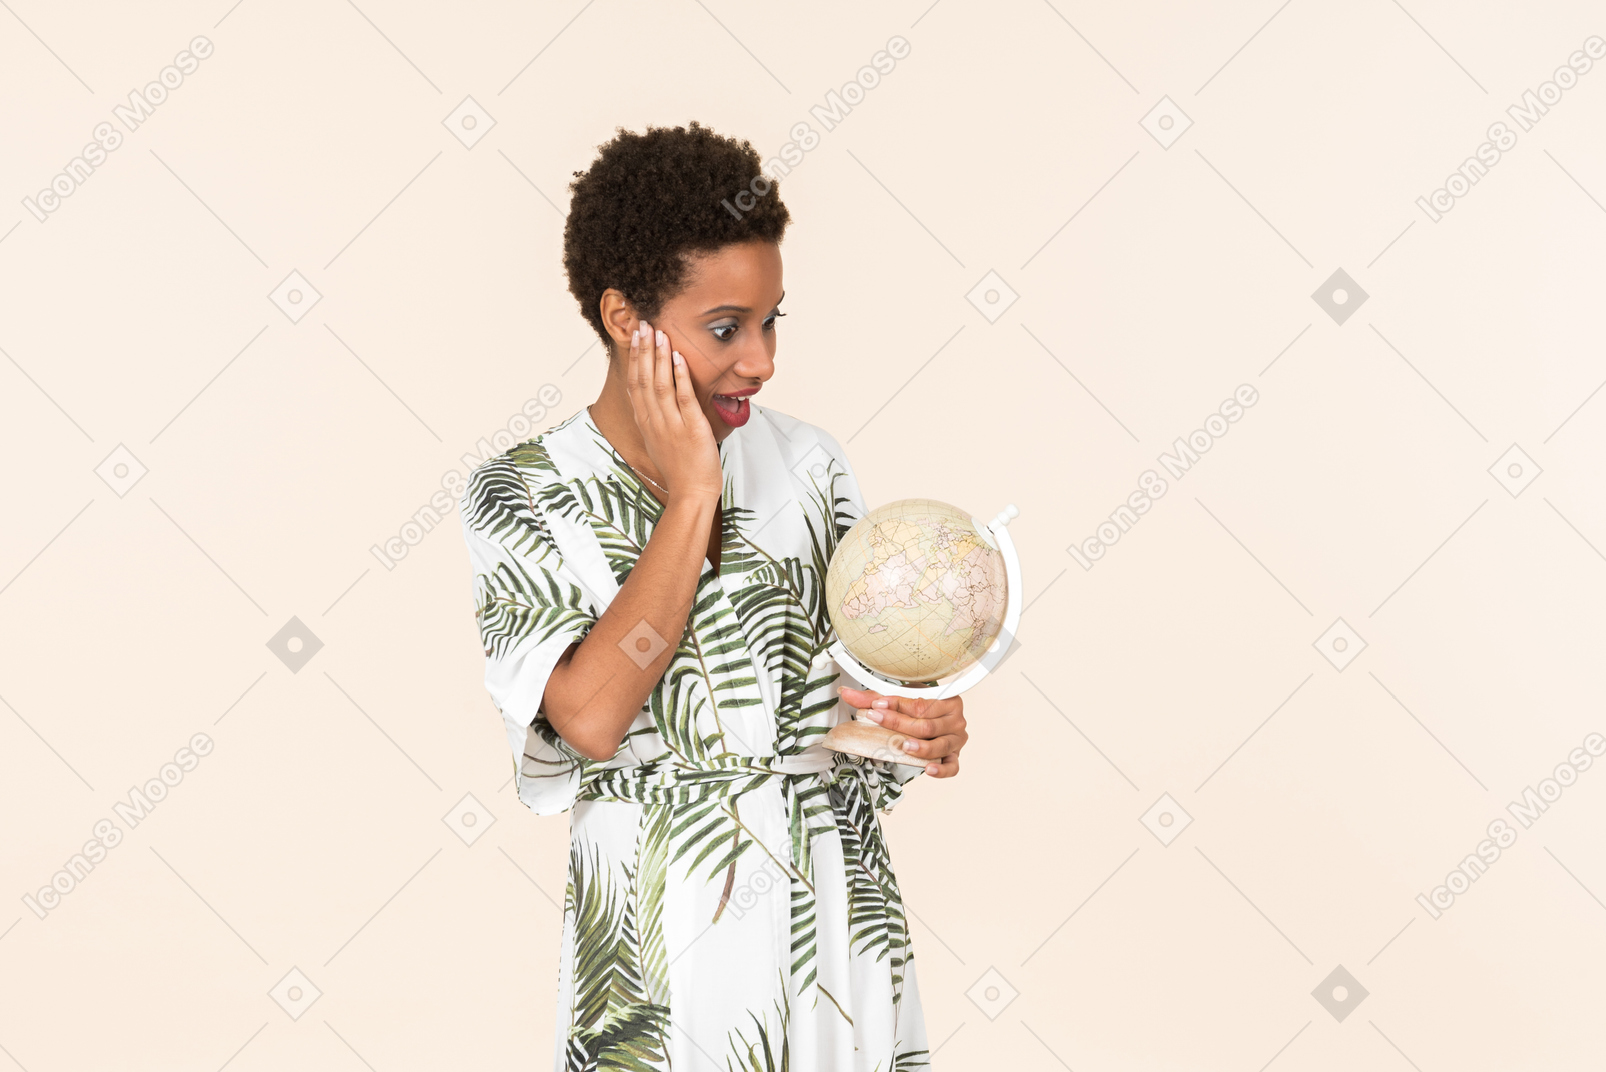 Schwarze kurzhaarige frau in einem weißen und grünen kleid, stehend mit einem globus in der hand